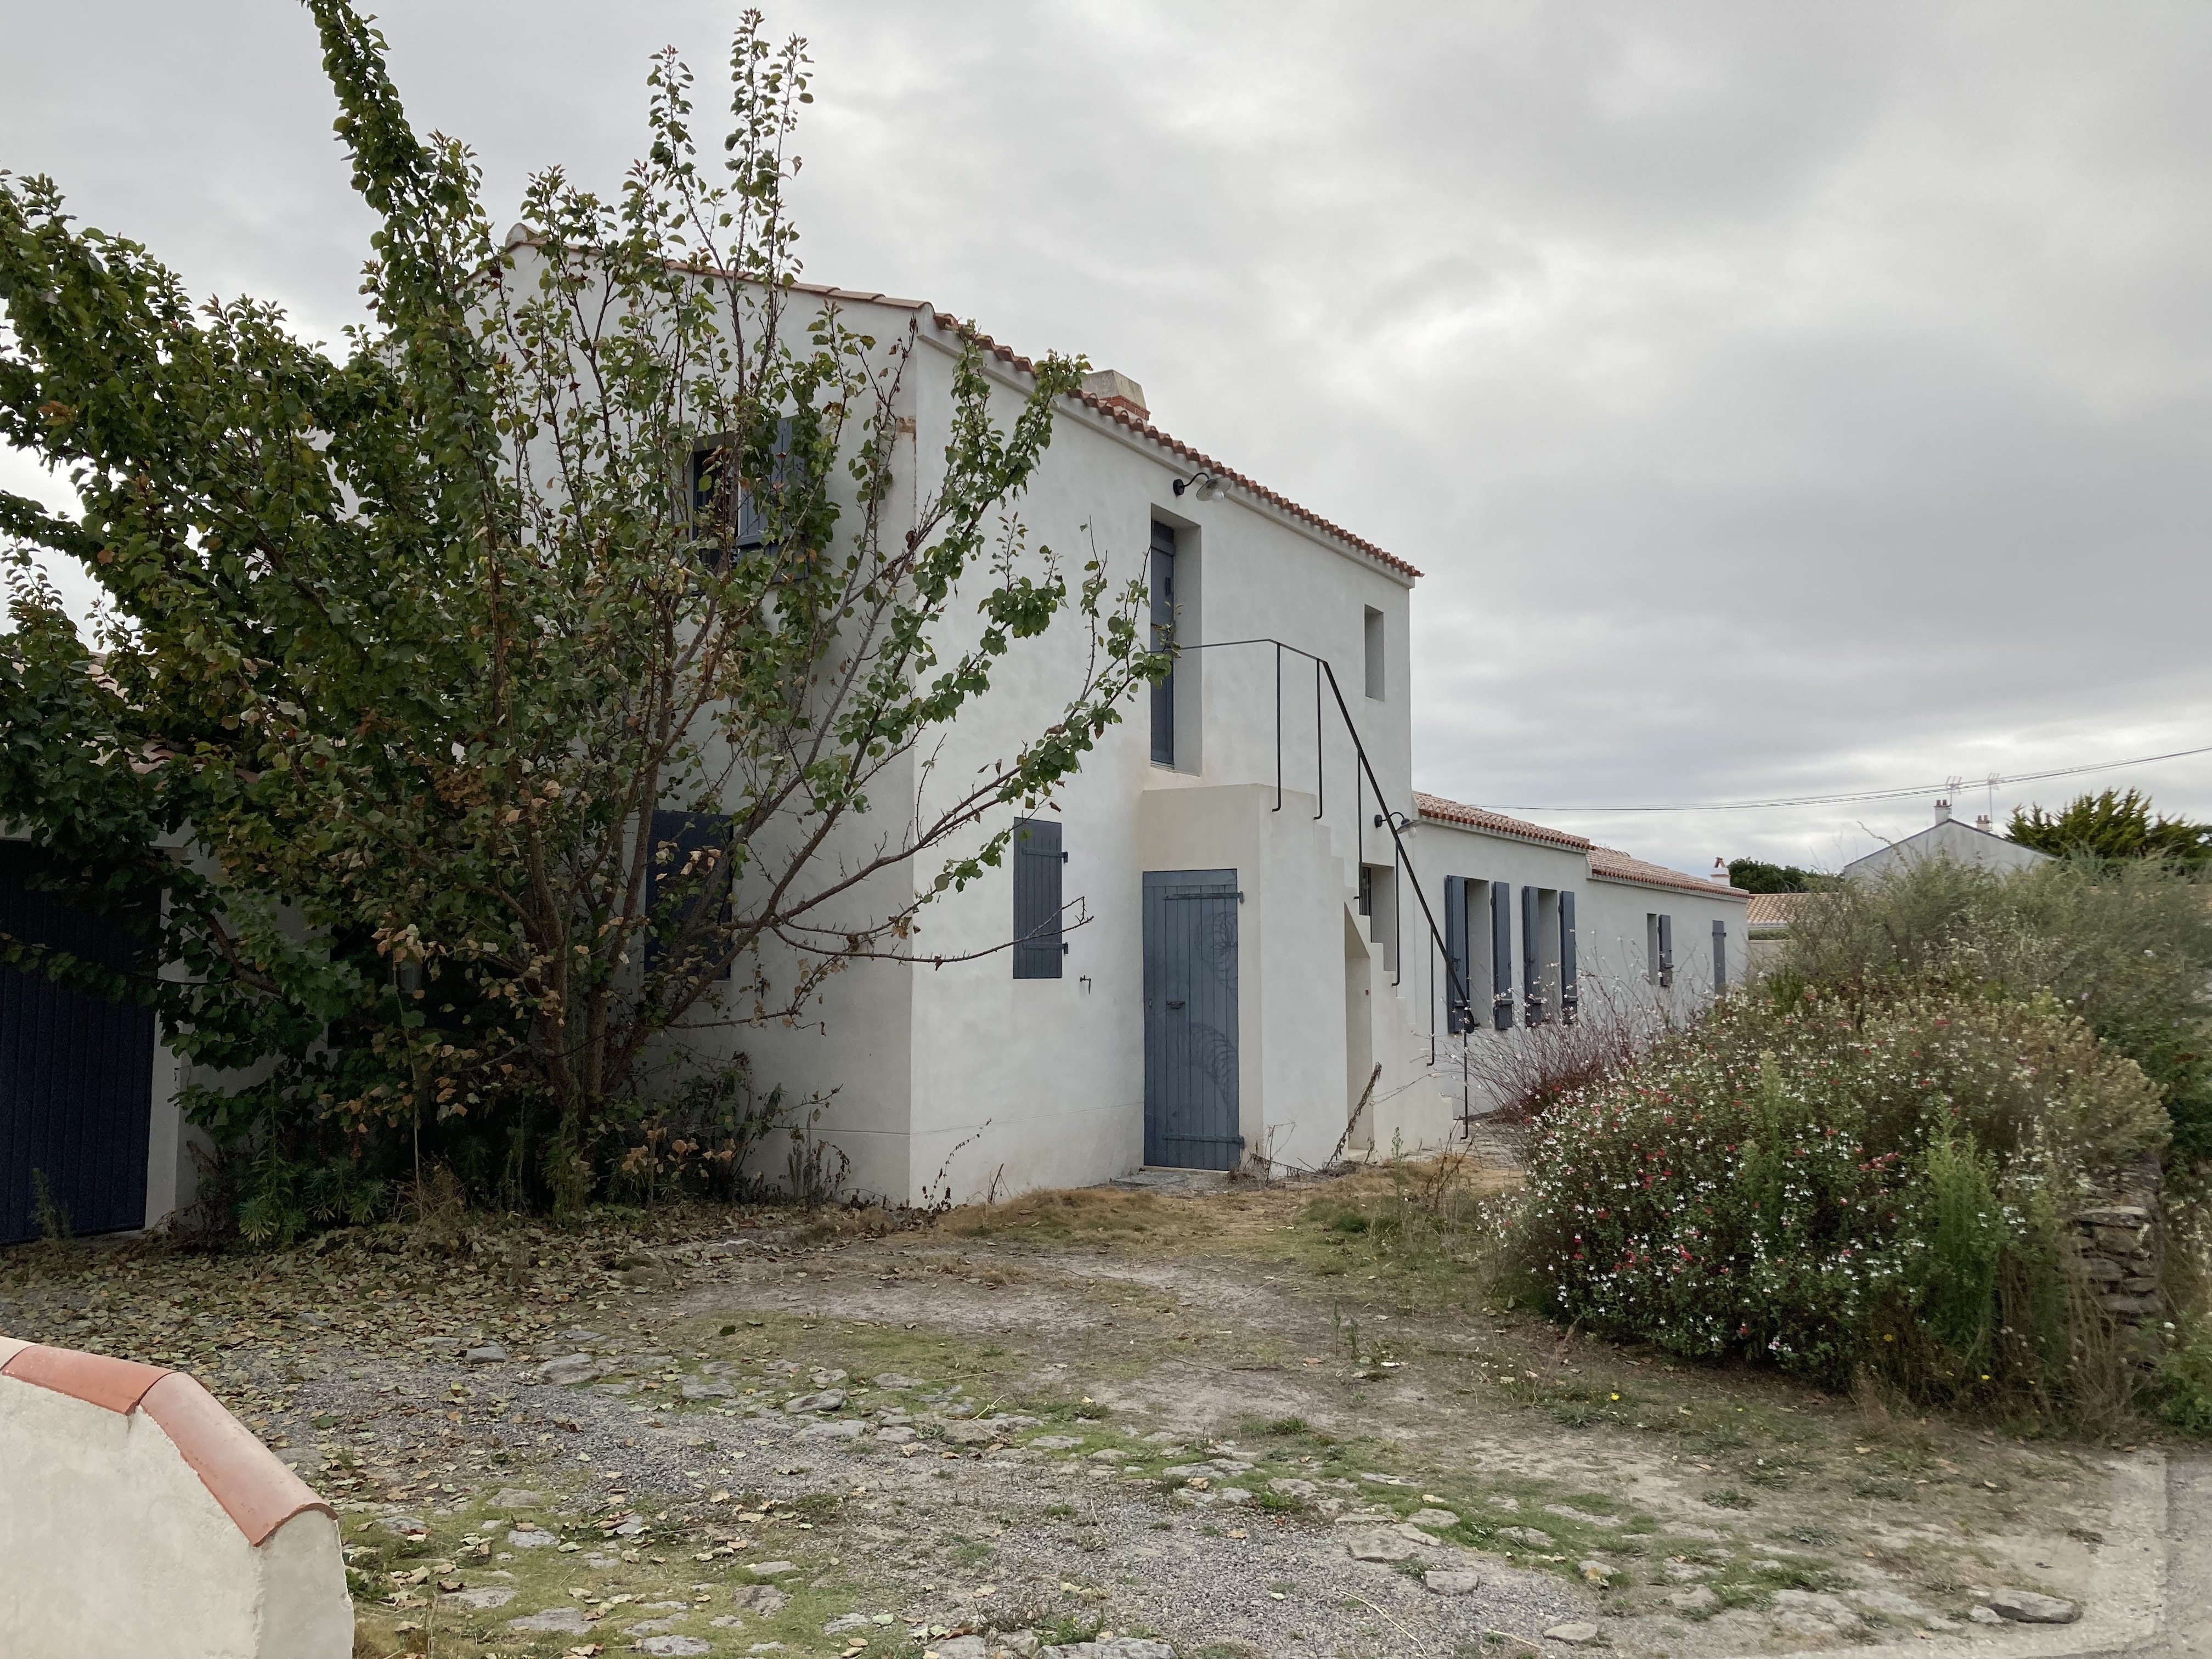 A vendre maison Noirmoutier en l'Ile 85330; 921 150 €